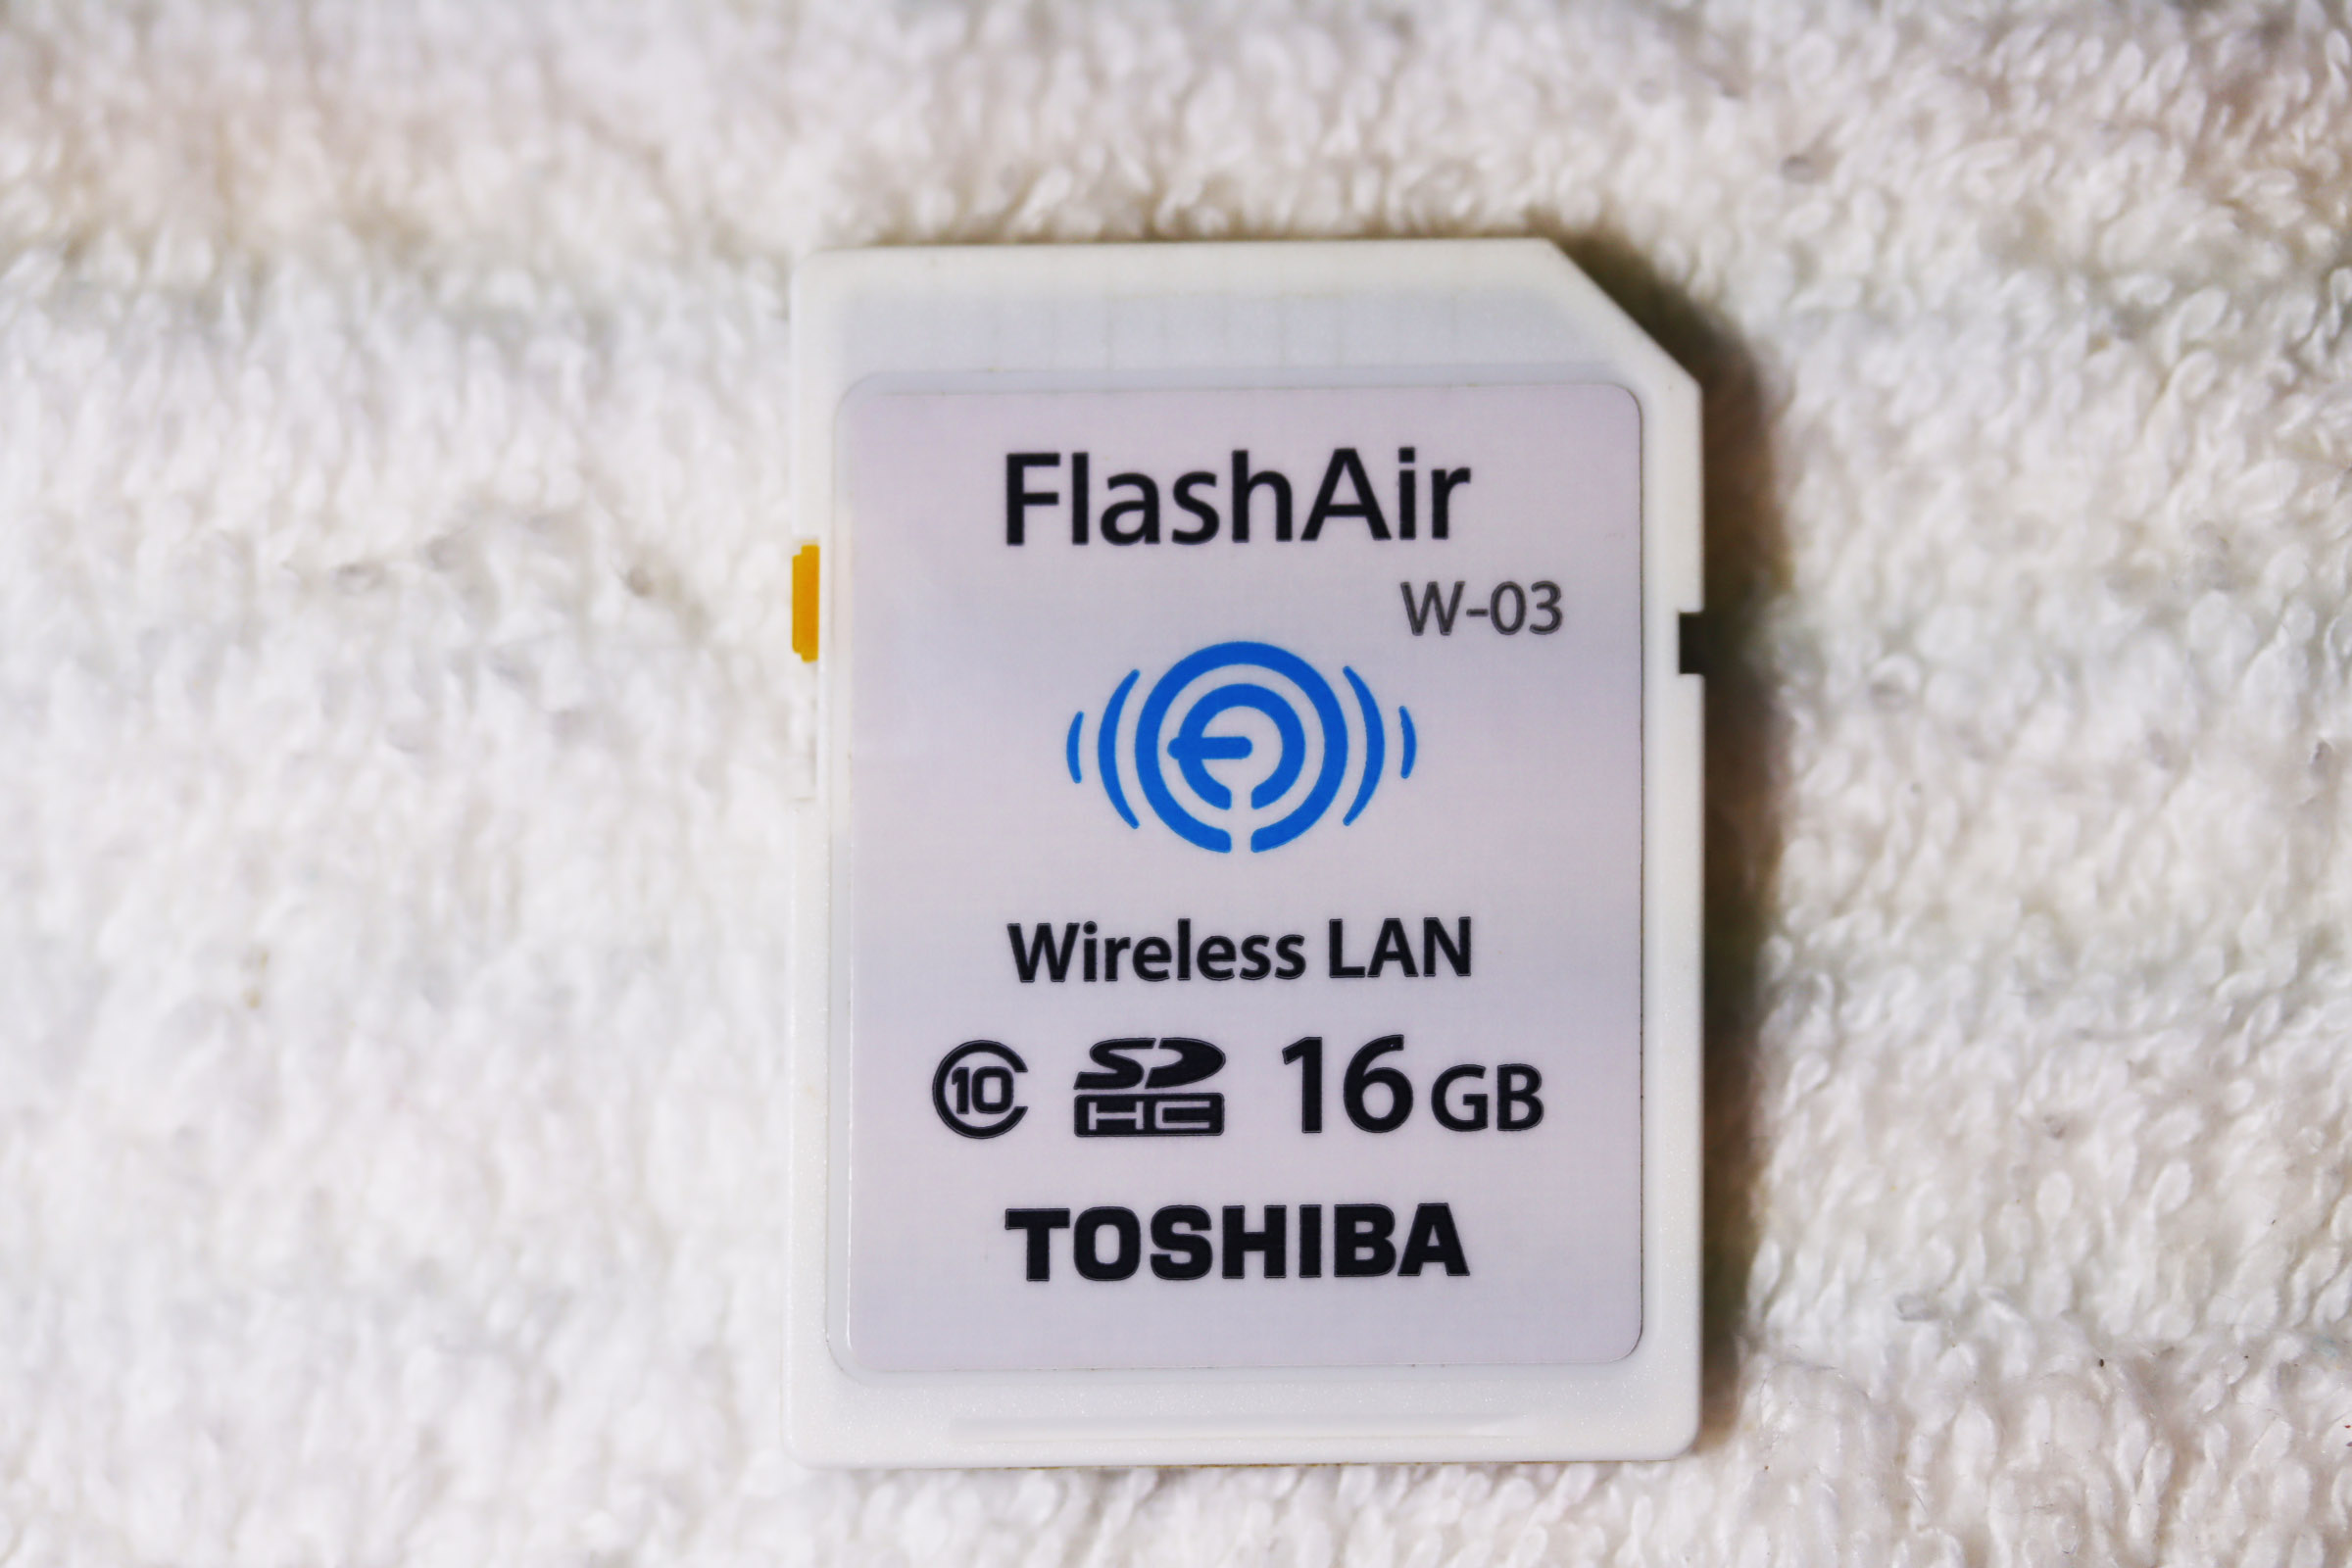 カメラ その他 Toshiba FlashAir SD WIFI 16GB FlashAir™ W-03 (ความจุ 16GB) Flash 